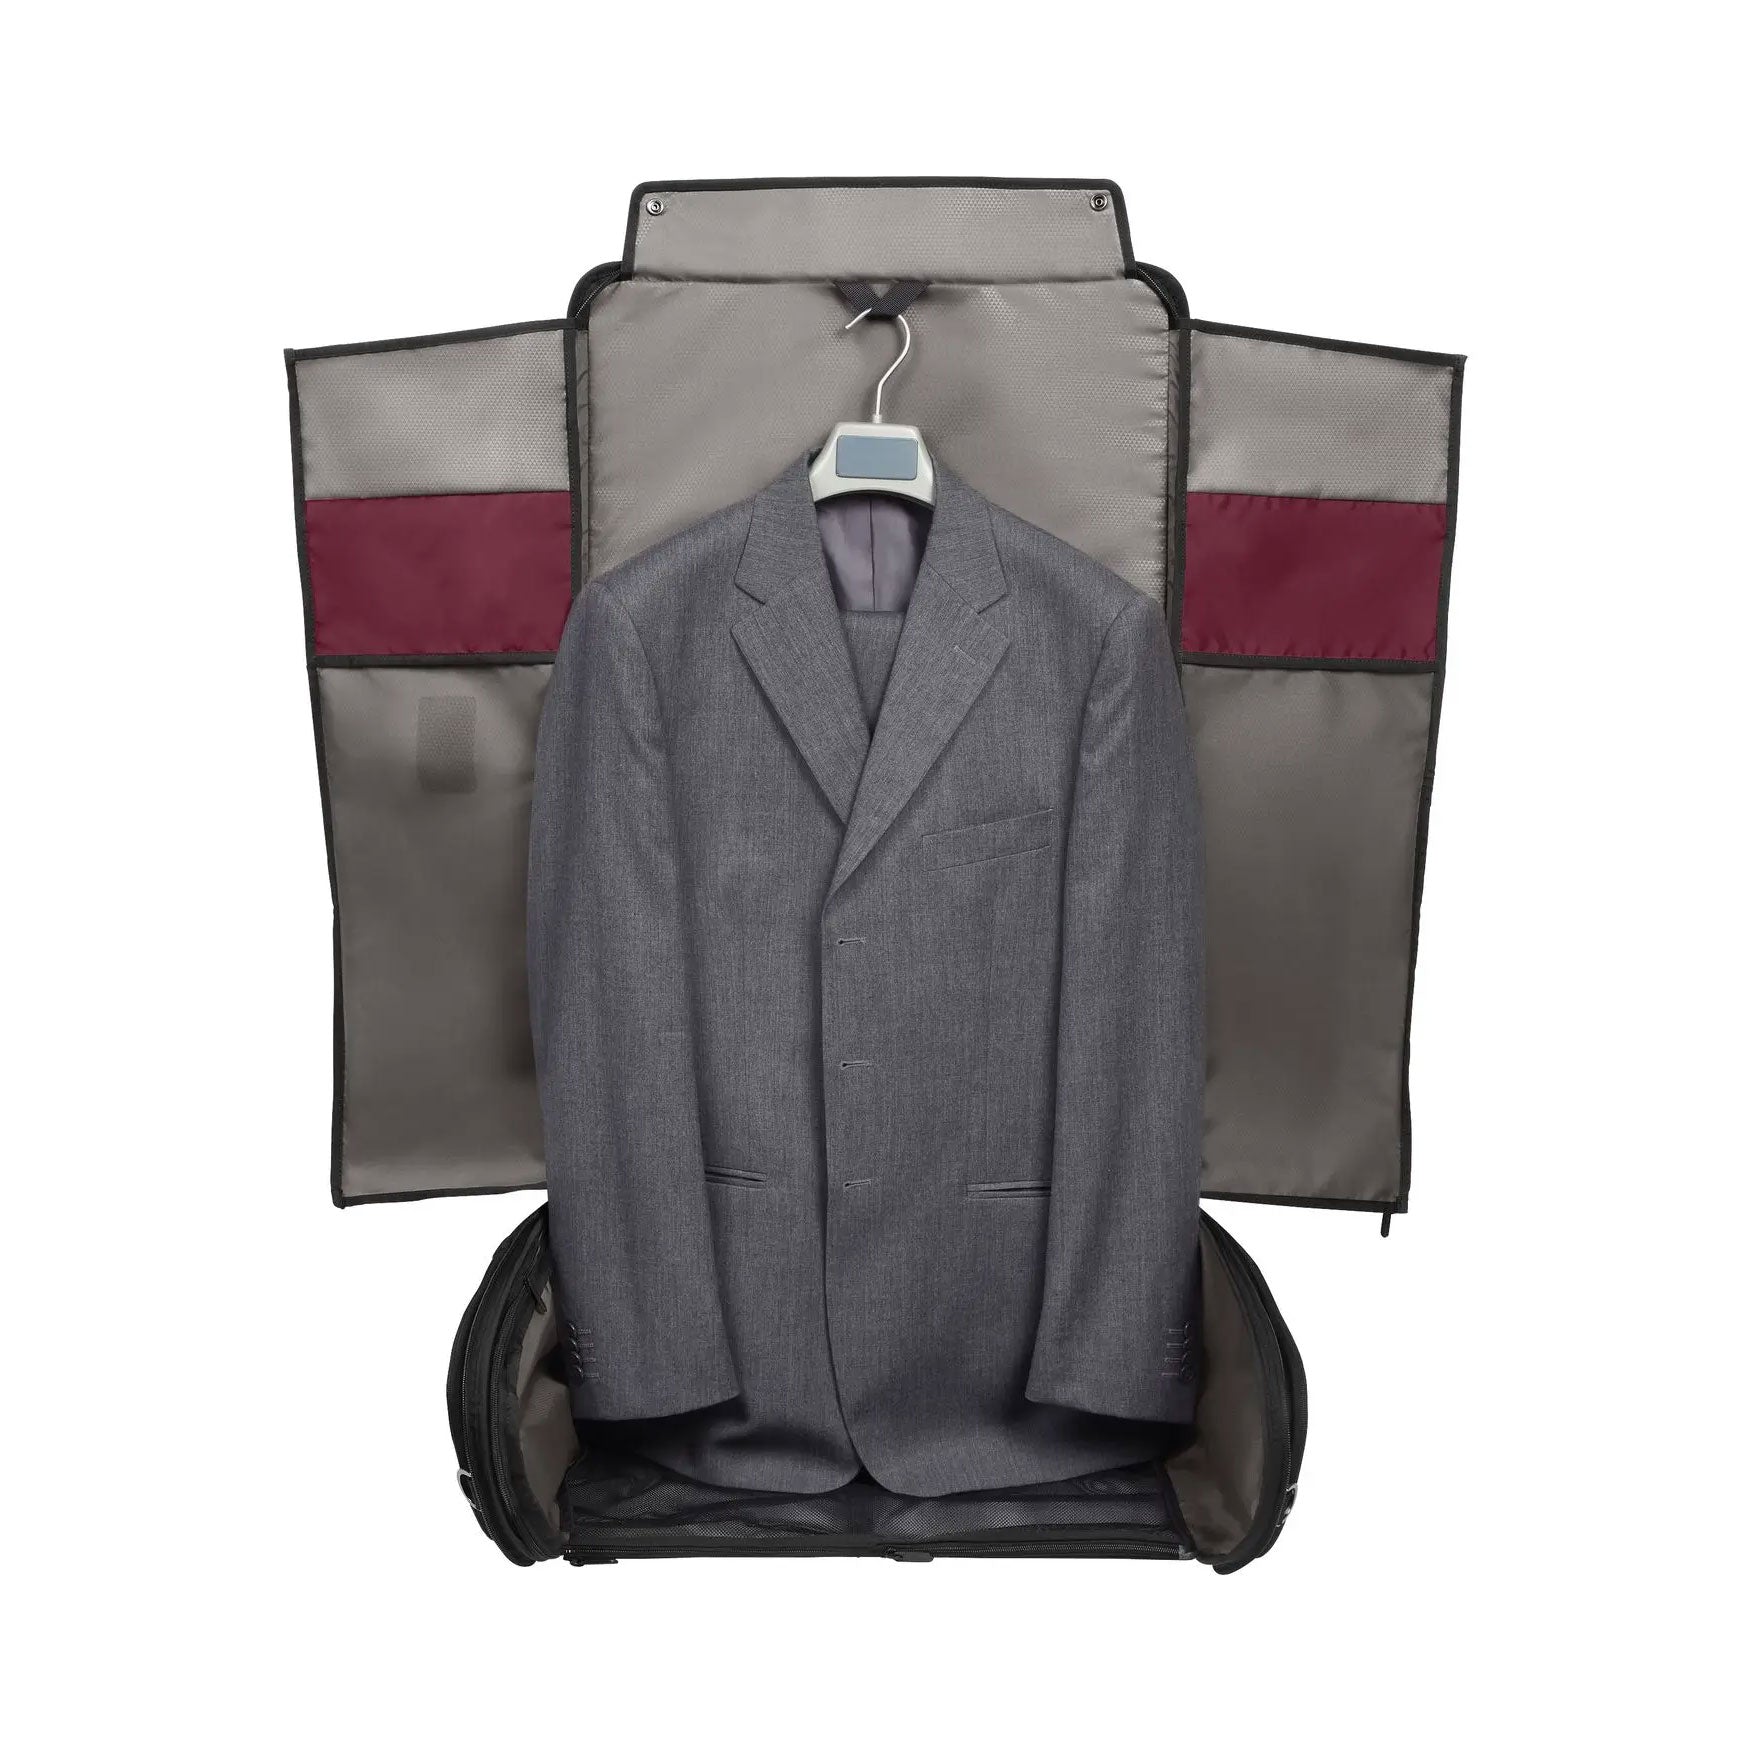 Single Suit/Dress Garment Bag